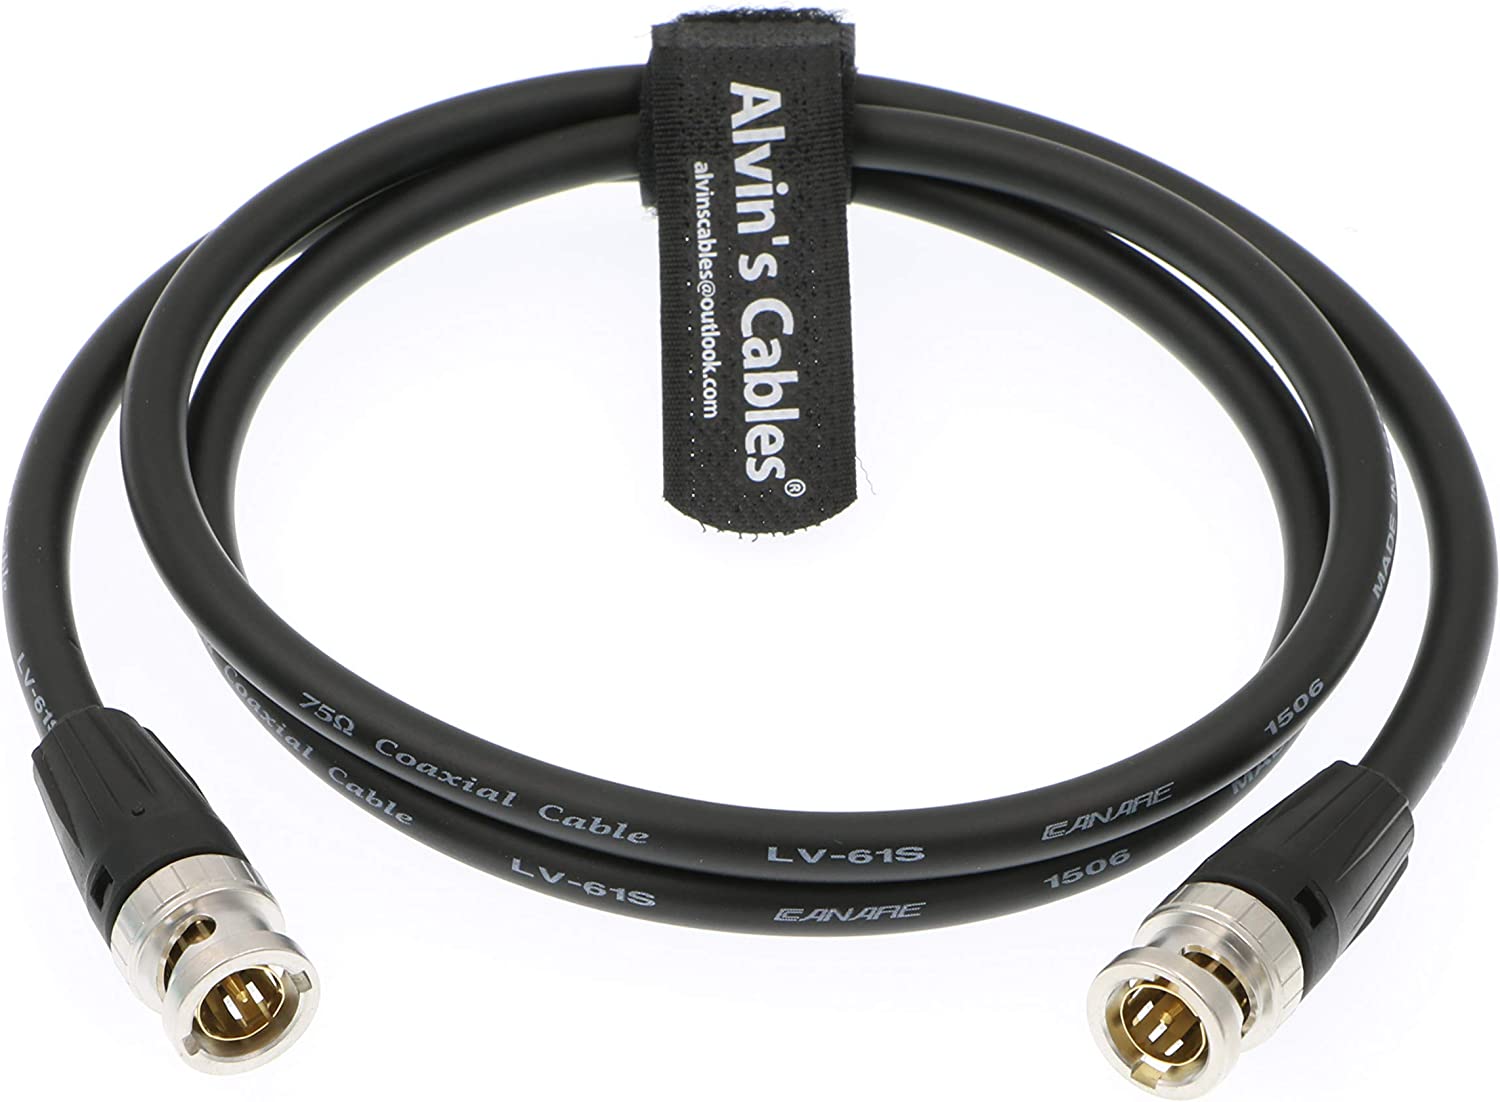 Alvin's Cables 12G HD SDI Video Koaxialkabel BNC Stecker auf Stecker für 4K Videokamera